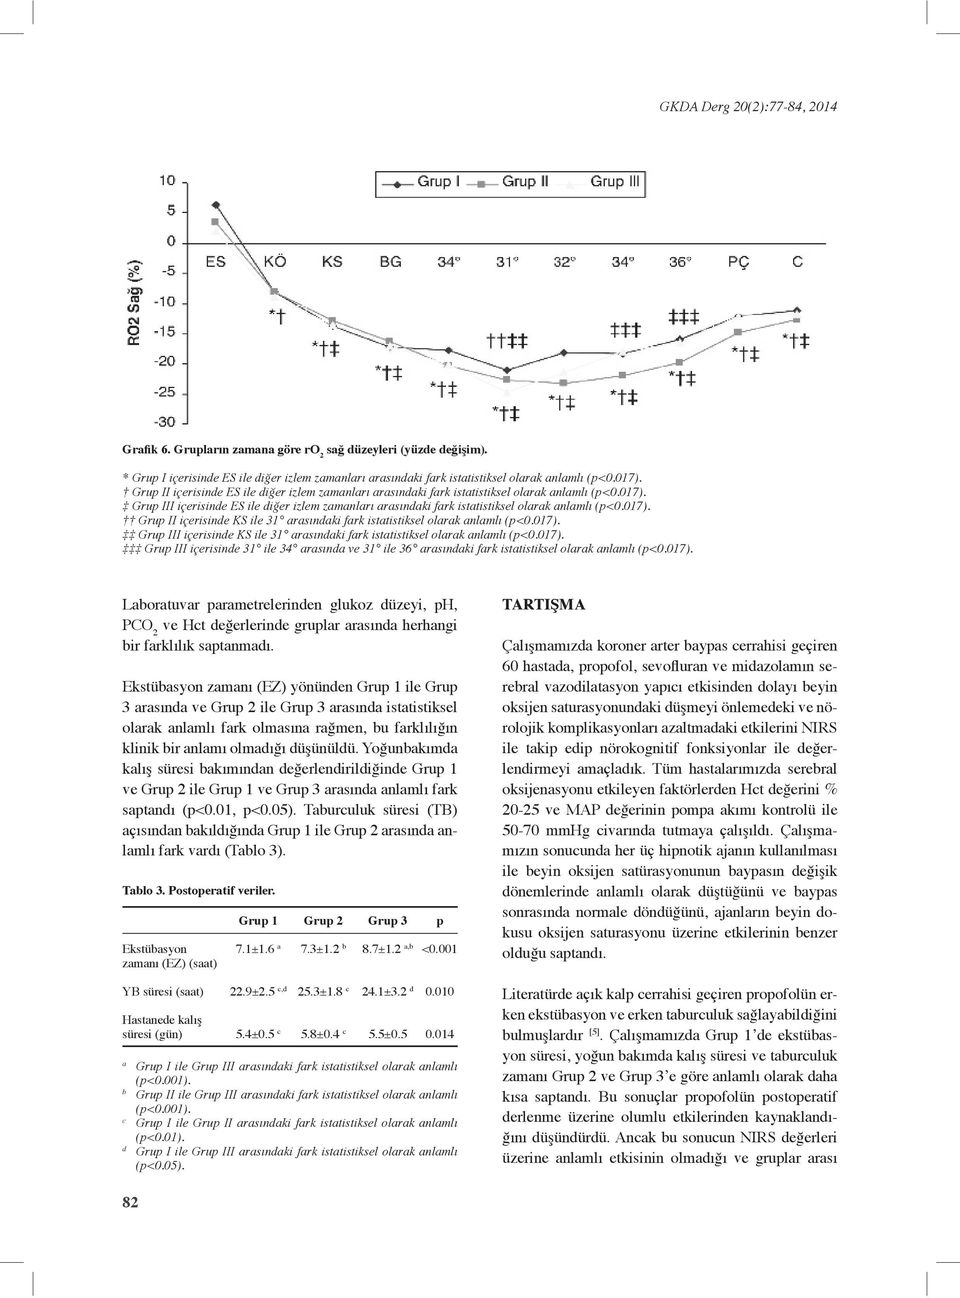 017). Laboratuvar parametrelerinden glukoz düzeyi, ph, PCO 2 ve Hct değerlerinde gruplar arasında herhangi bir farklılık saptanmadı.